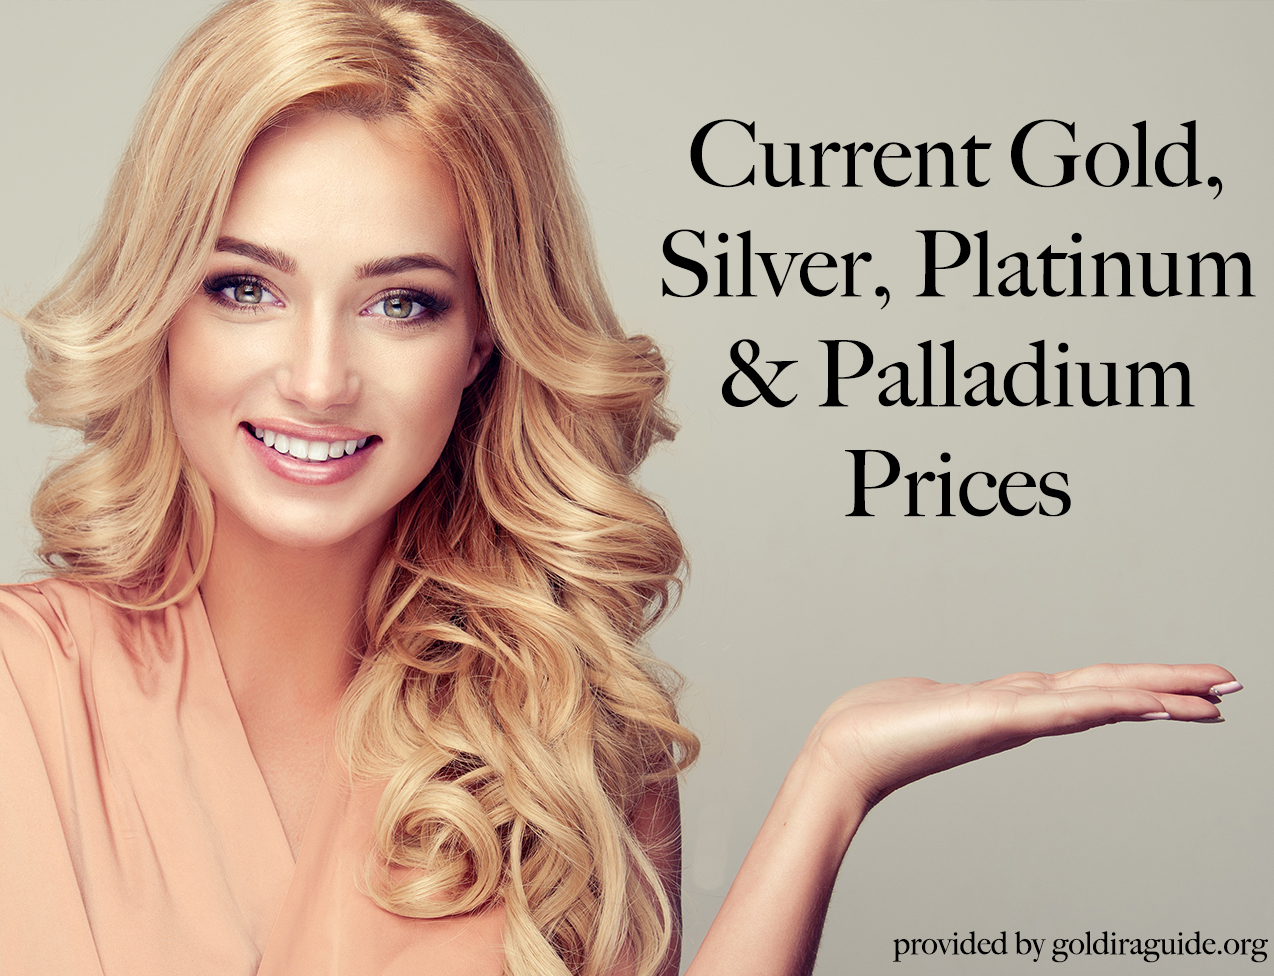 Current gold, silver, platinum & palladium prices